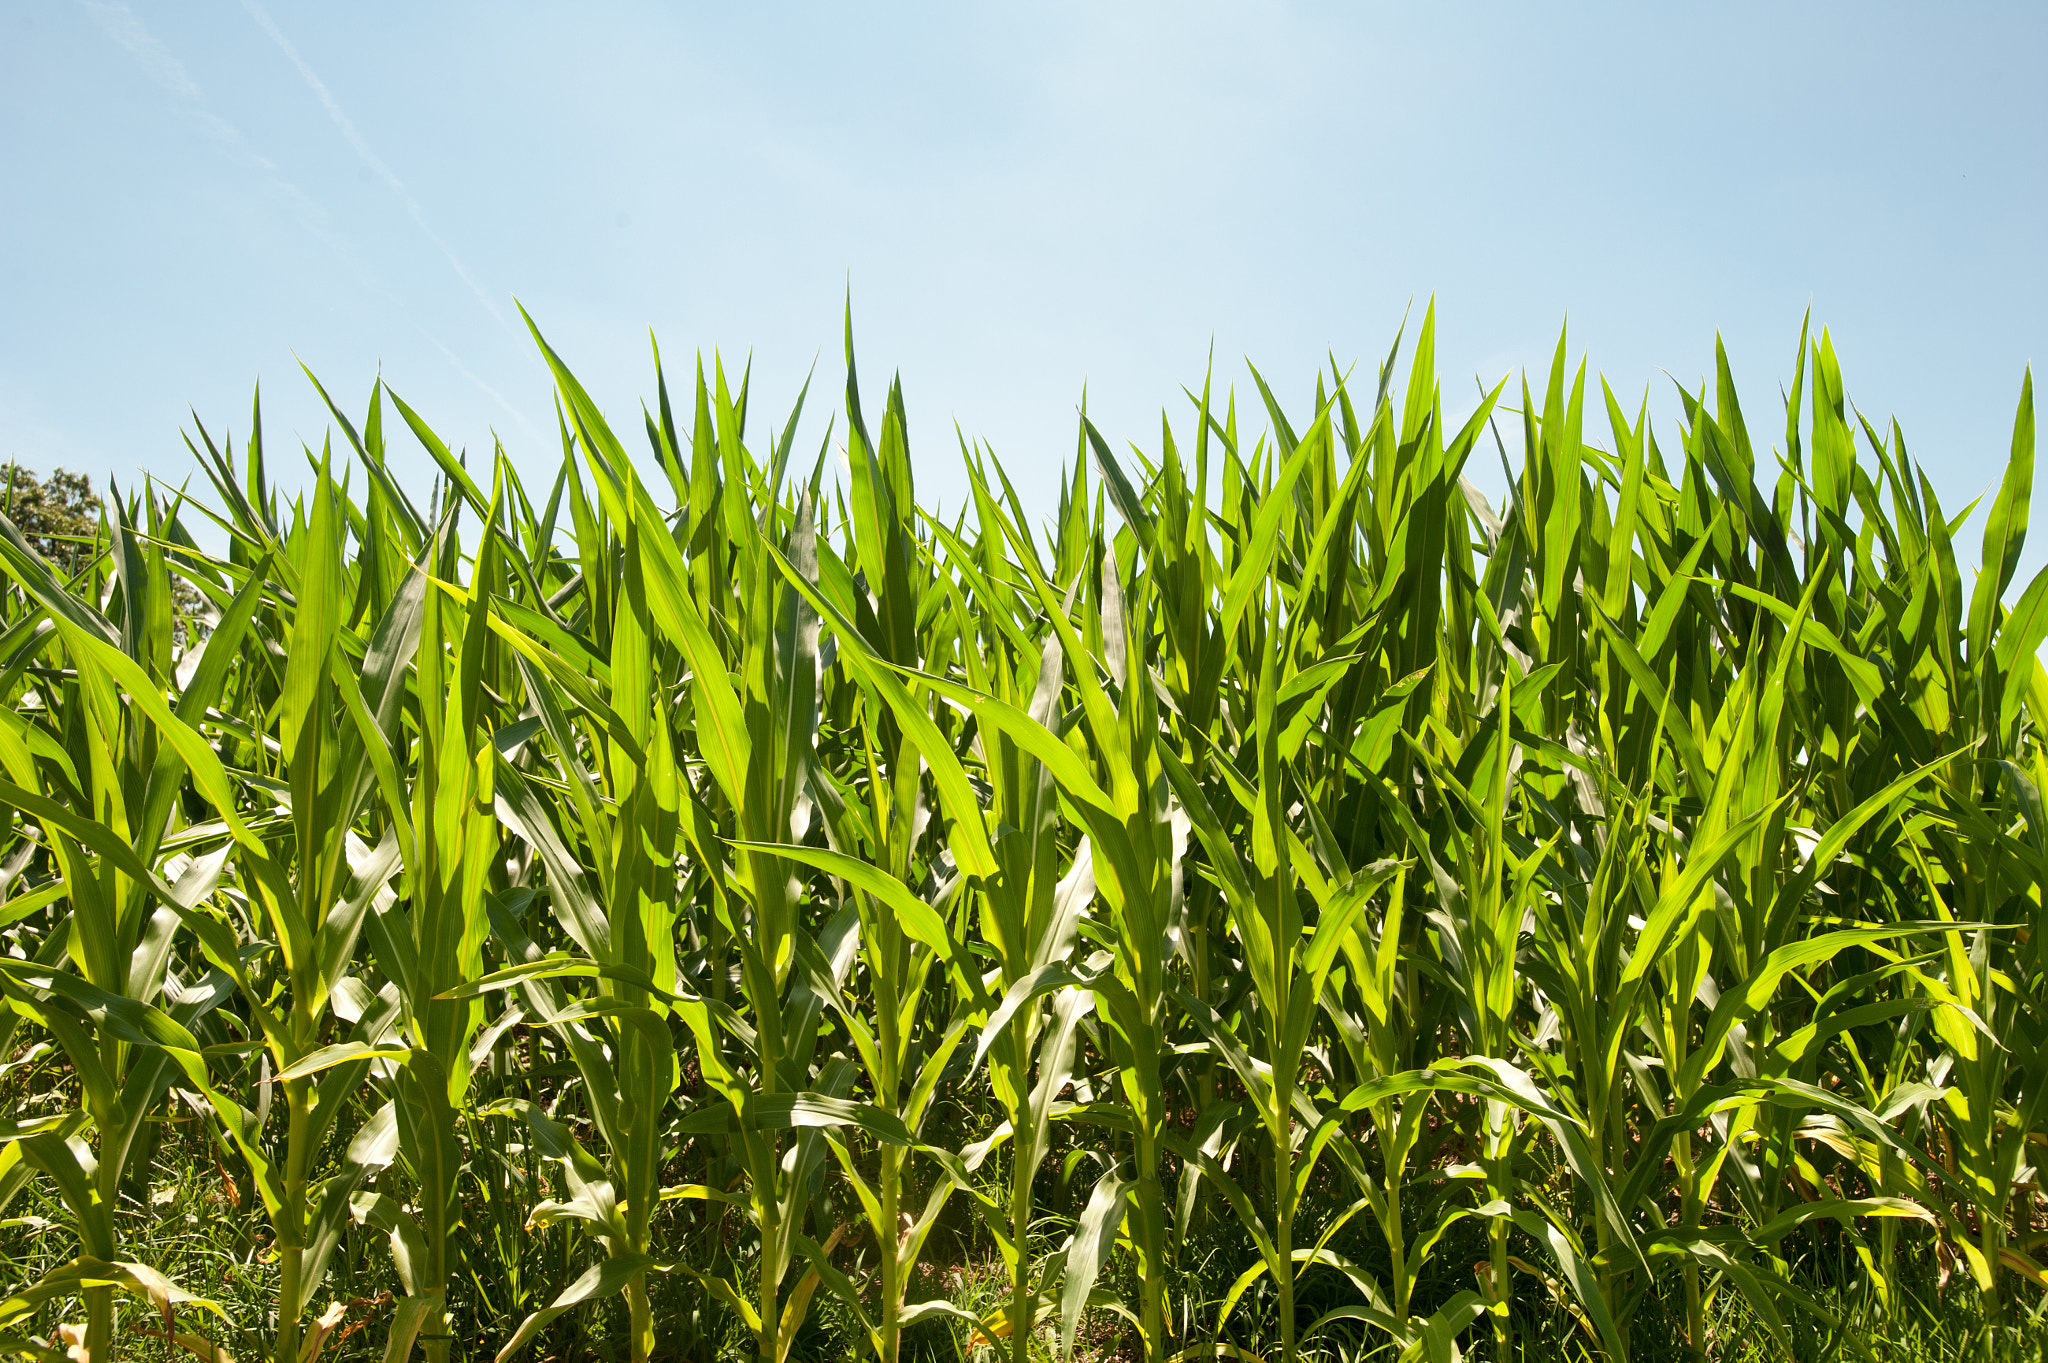 Nikon D700 sample photo. Field of corn crop in summer sun photography